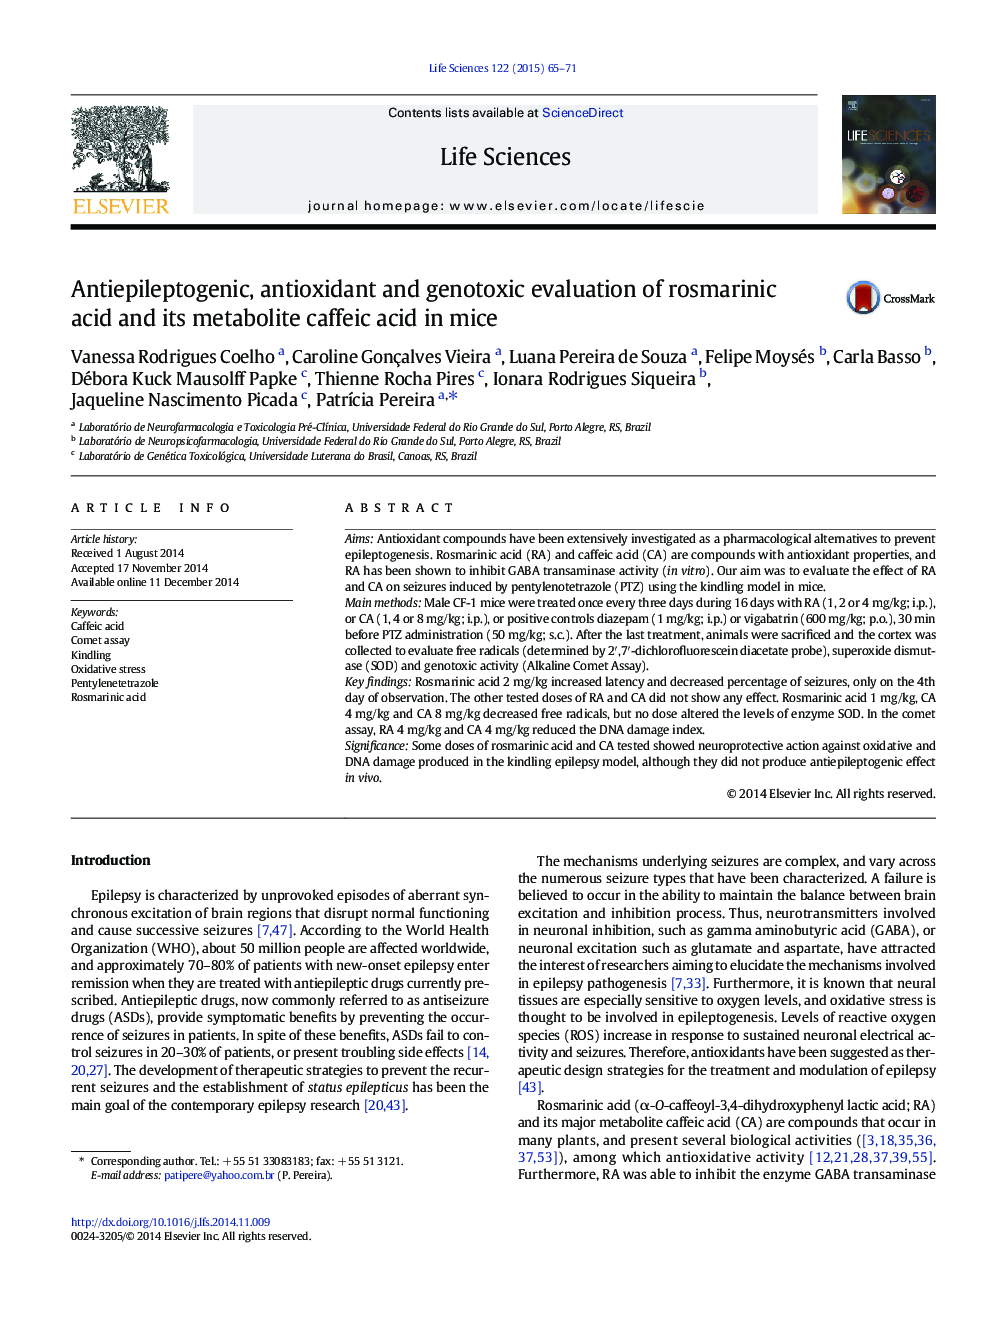 ارزیابی آنتی اکسیدان، آنتی اکسیدان و ژنوتوکسیک اسید رزمارینیک و متابولیت کافئیک اسید در موش 